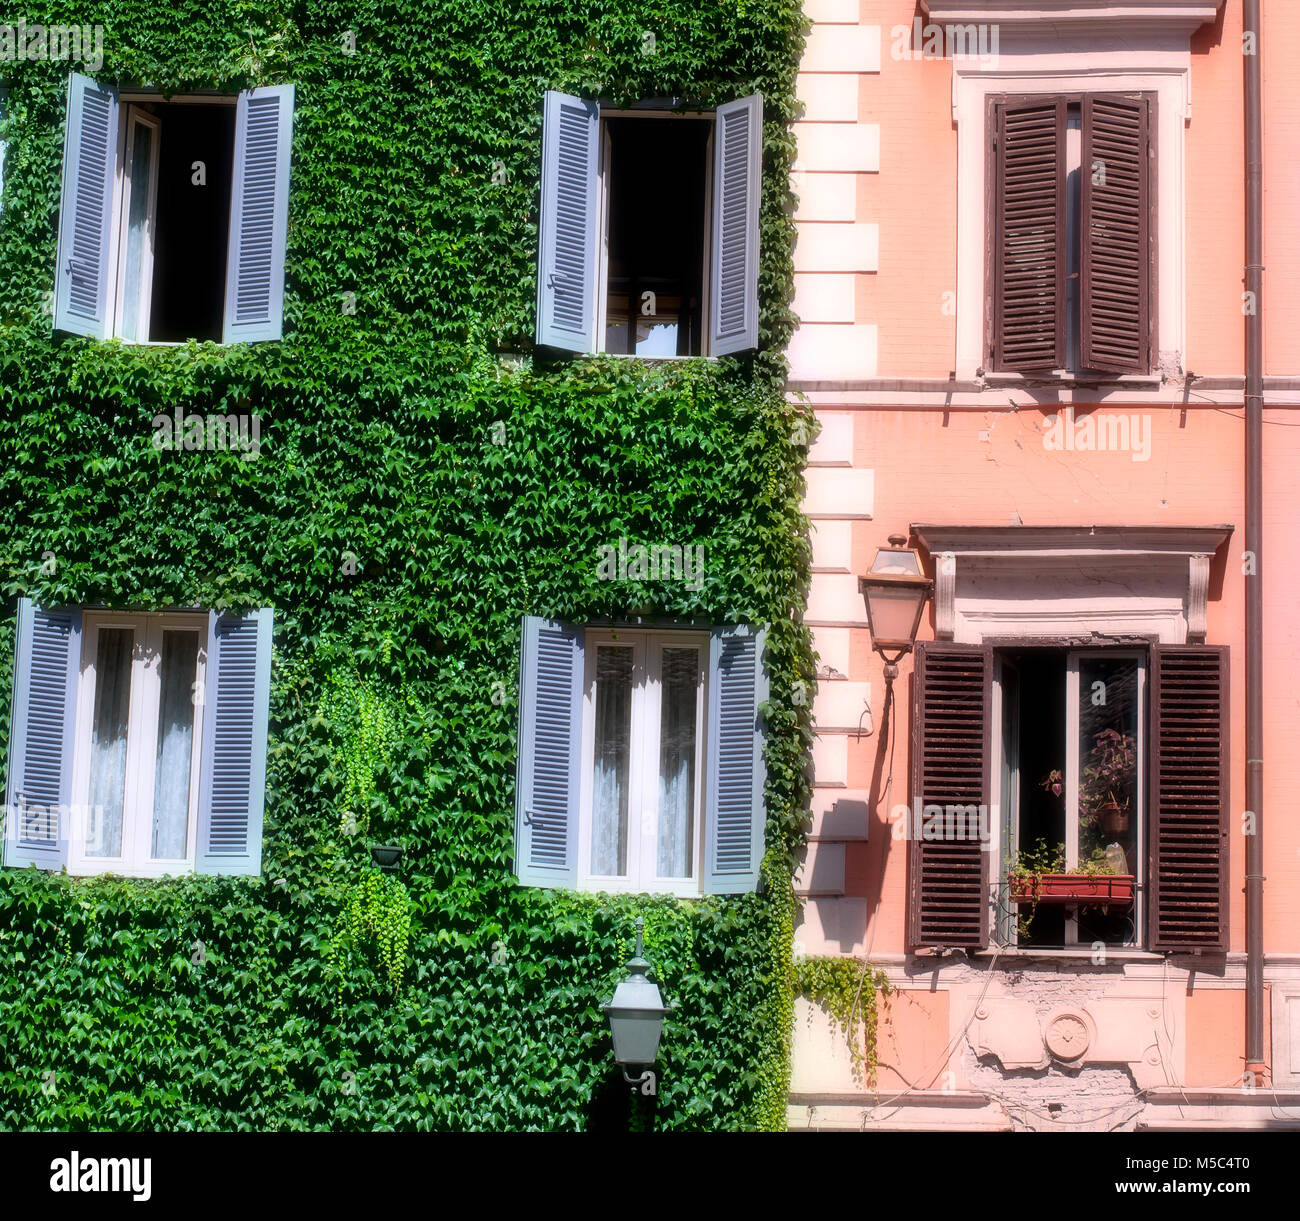 Das helle Gebäude von Ivy an einem sonnigen Tag in Rom, die Hauptstadt Italiens. Stockfoto